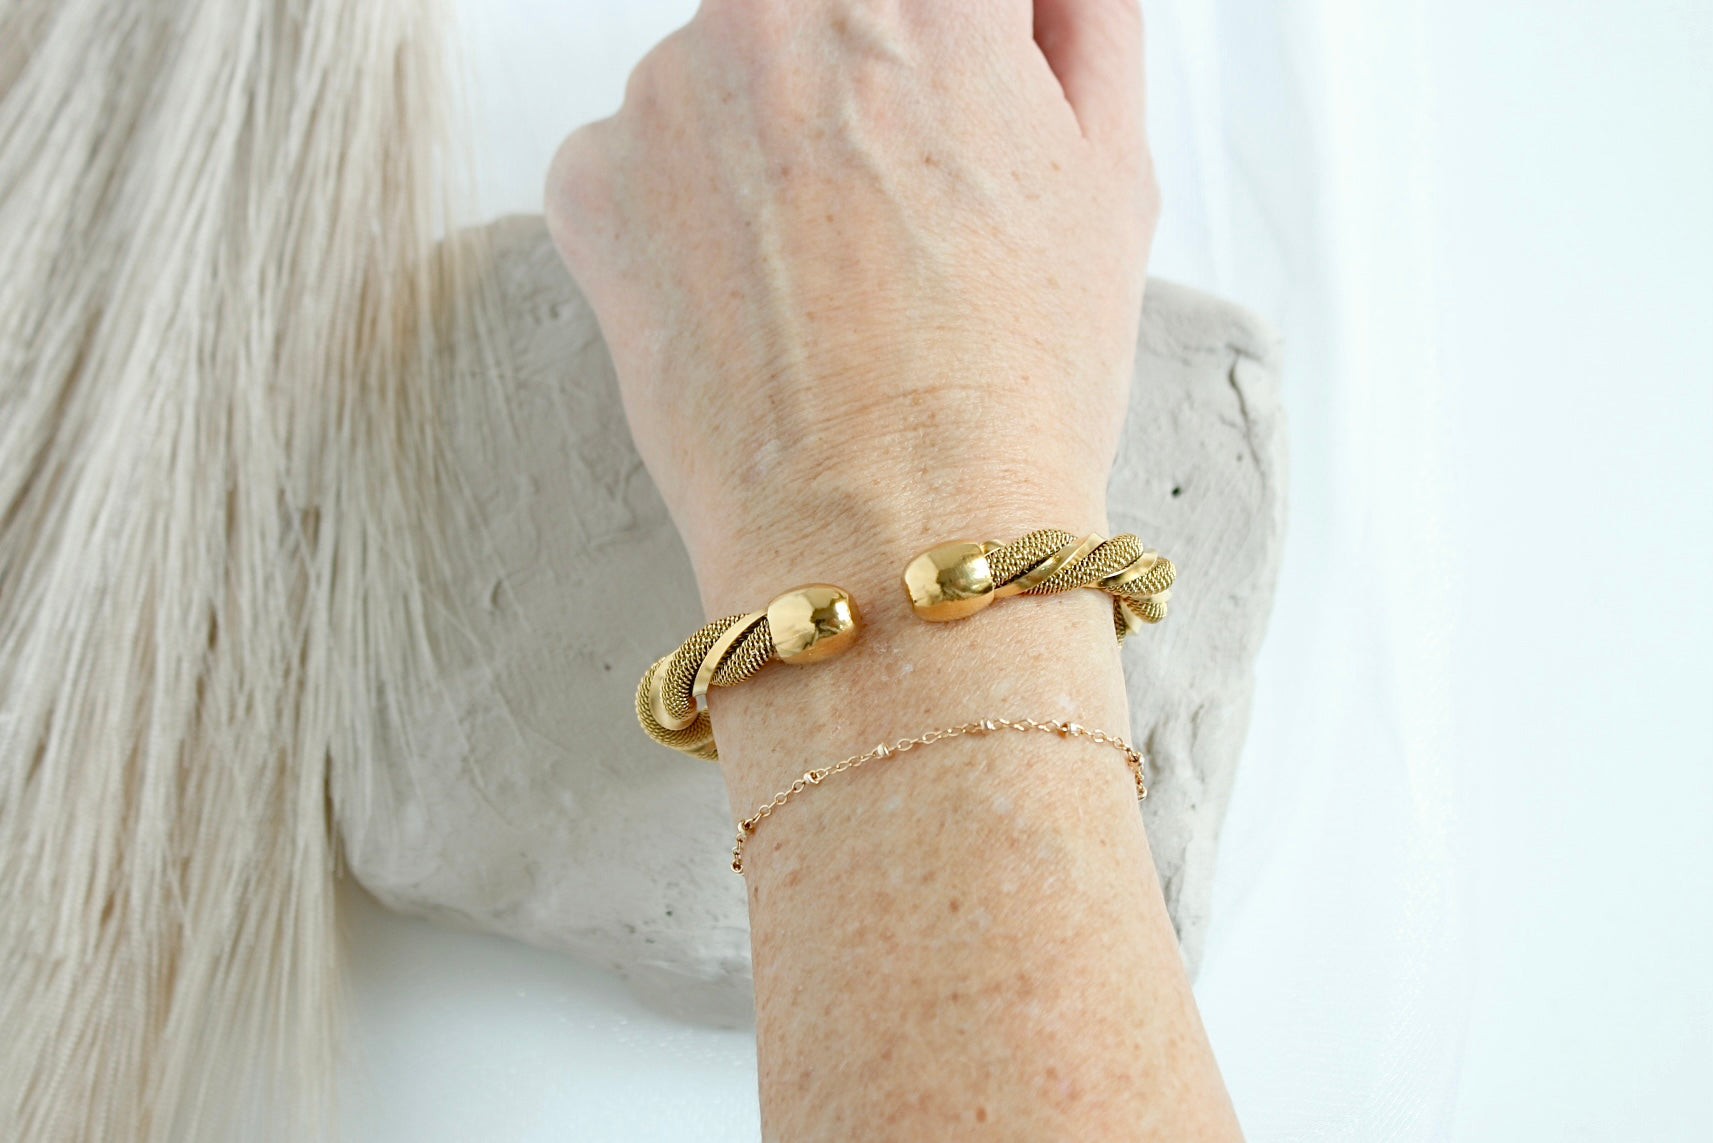 Chunky gold bangle bracelet